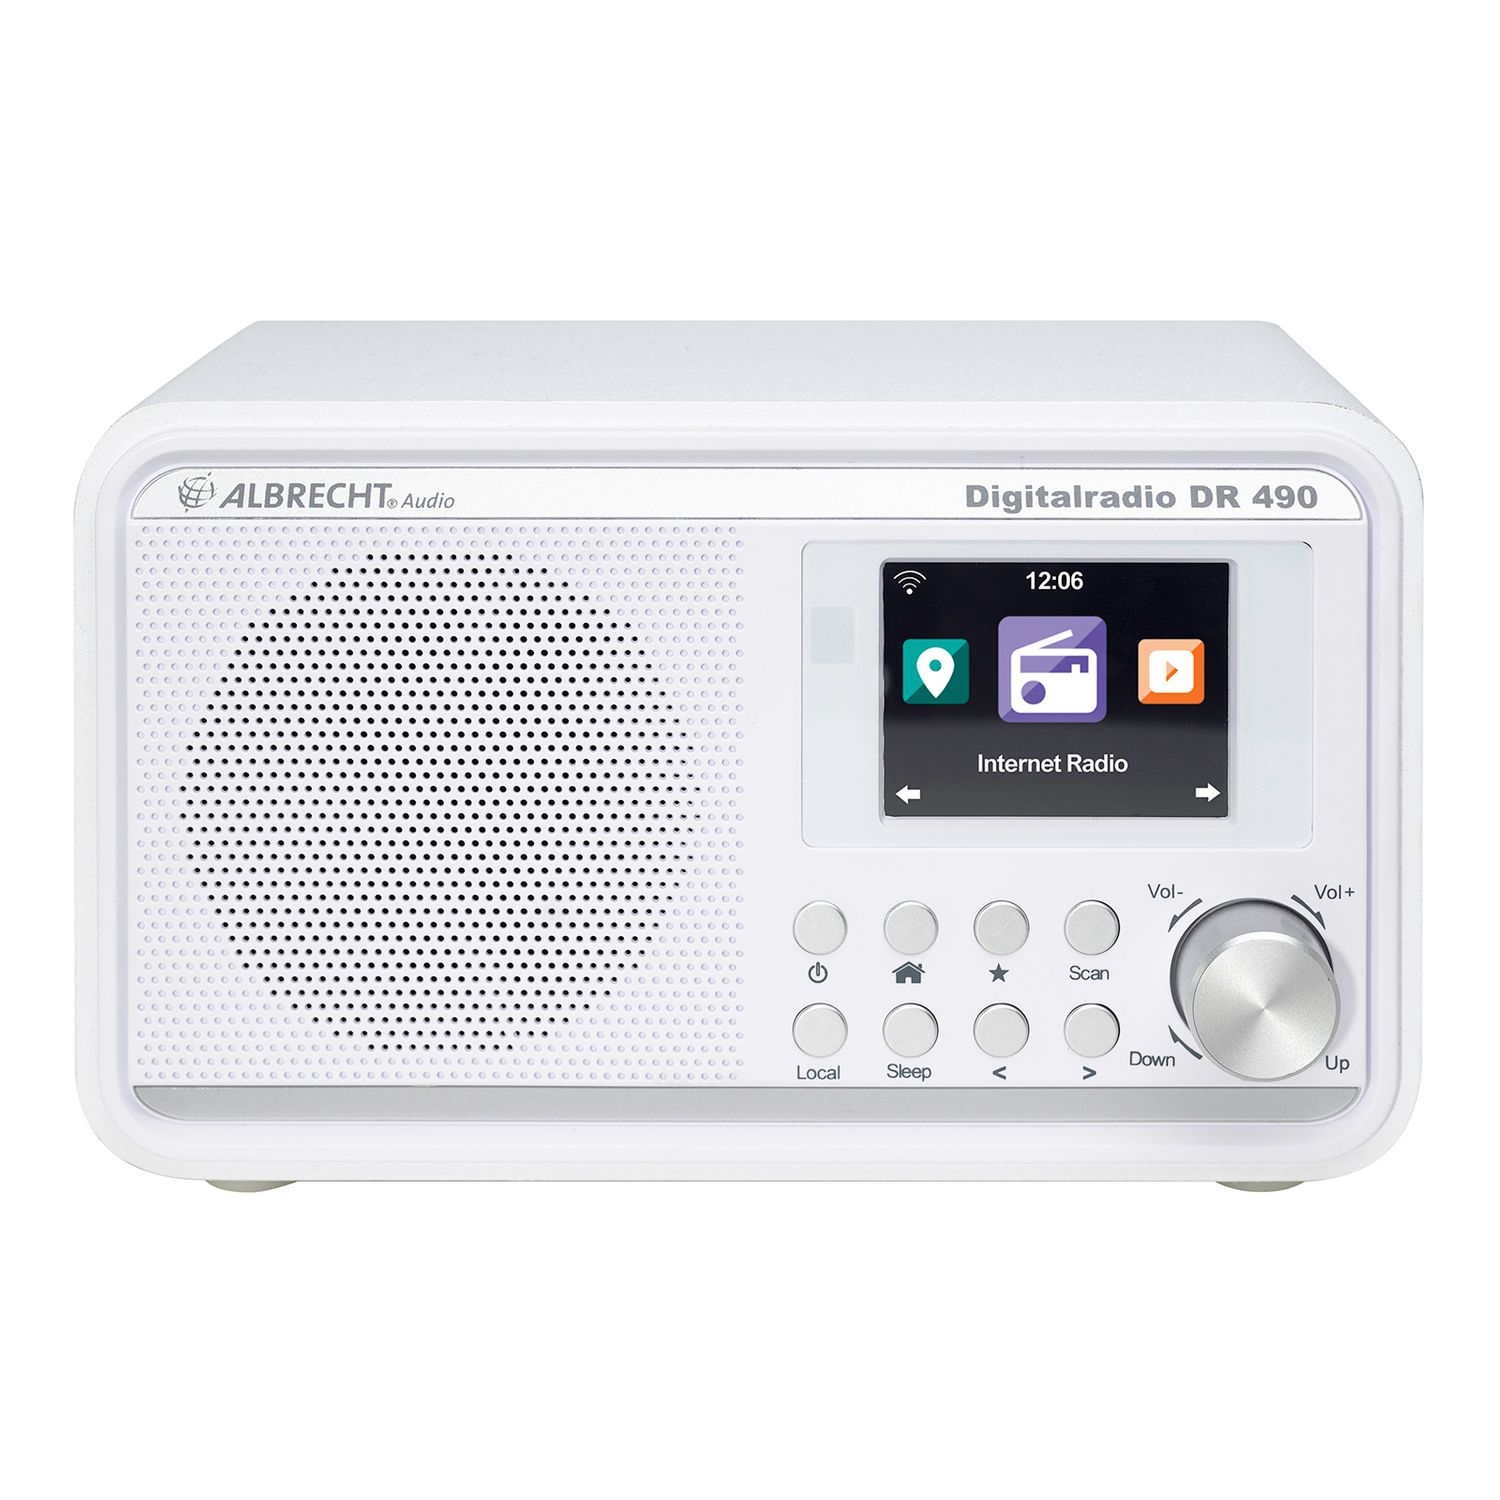 Digitalradio DAB, 490 DAB+ Bluetooth, DAB+, FM, FM, weiß DAB+, ALBRECHT AM, DR Multifunktionsradio,